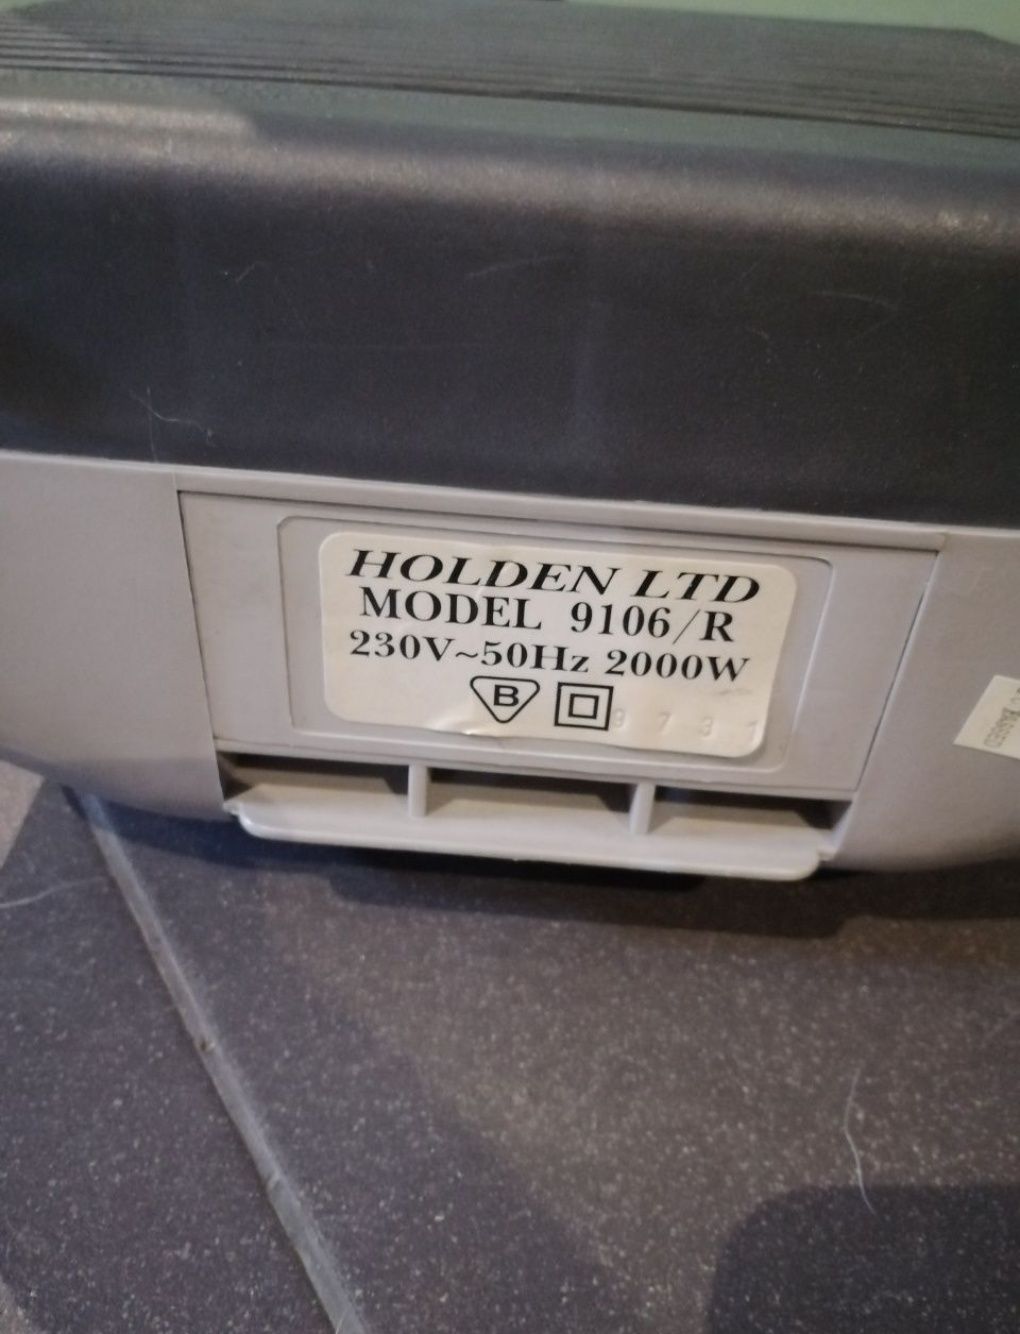 Holden 2000 dmuchawa w szarym kolorze